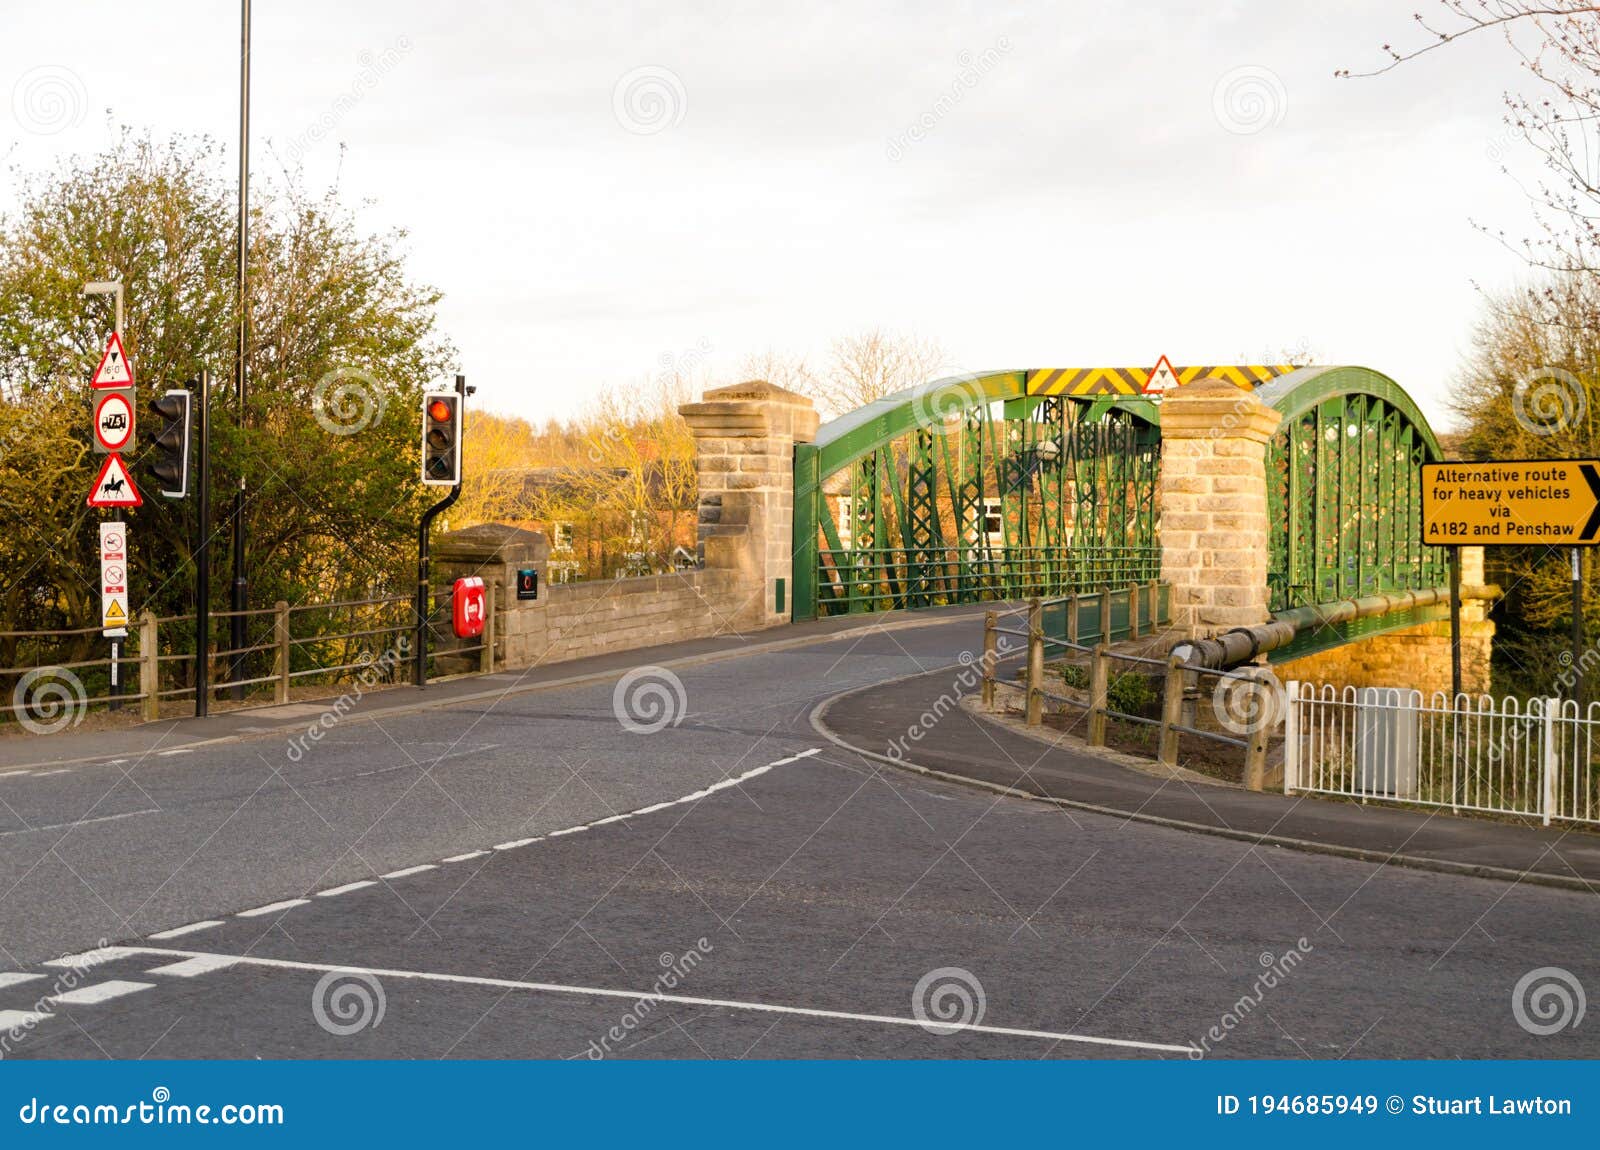 fatfield road bridge at fatfield, washington, tyne & wear